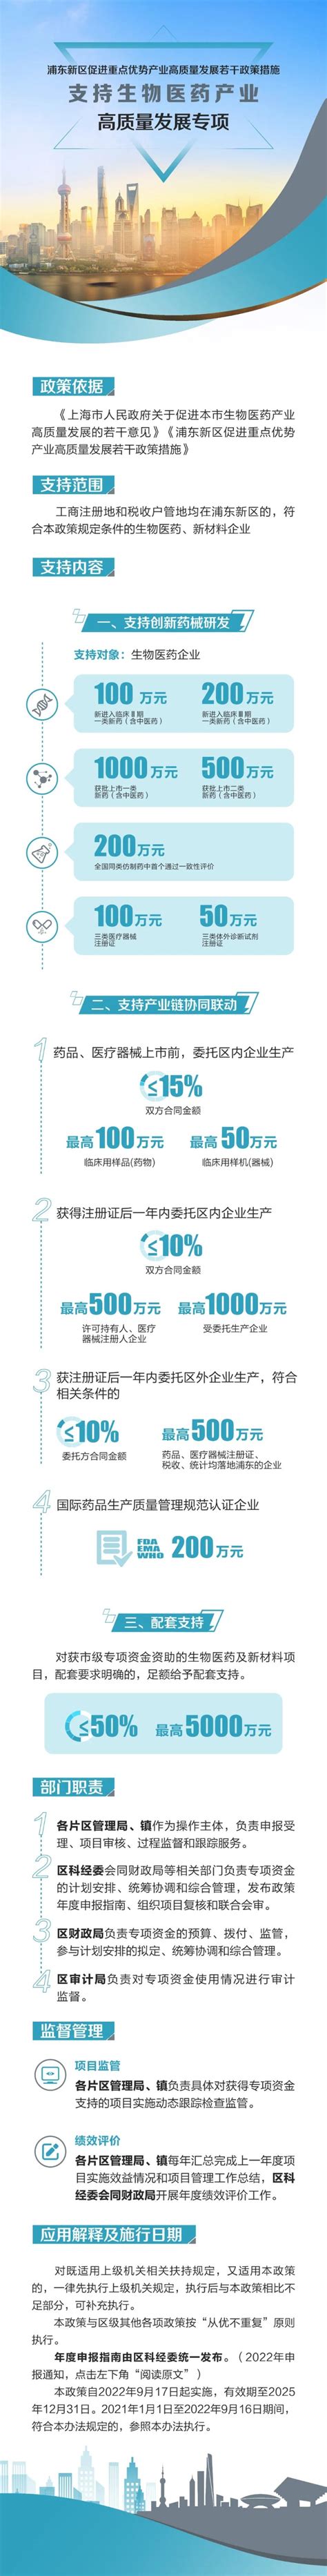 2019中国信息流广告市场现状发展趋势分析 - 深圳厚拓官网